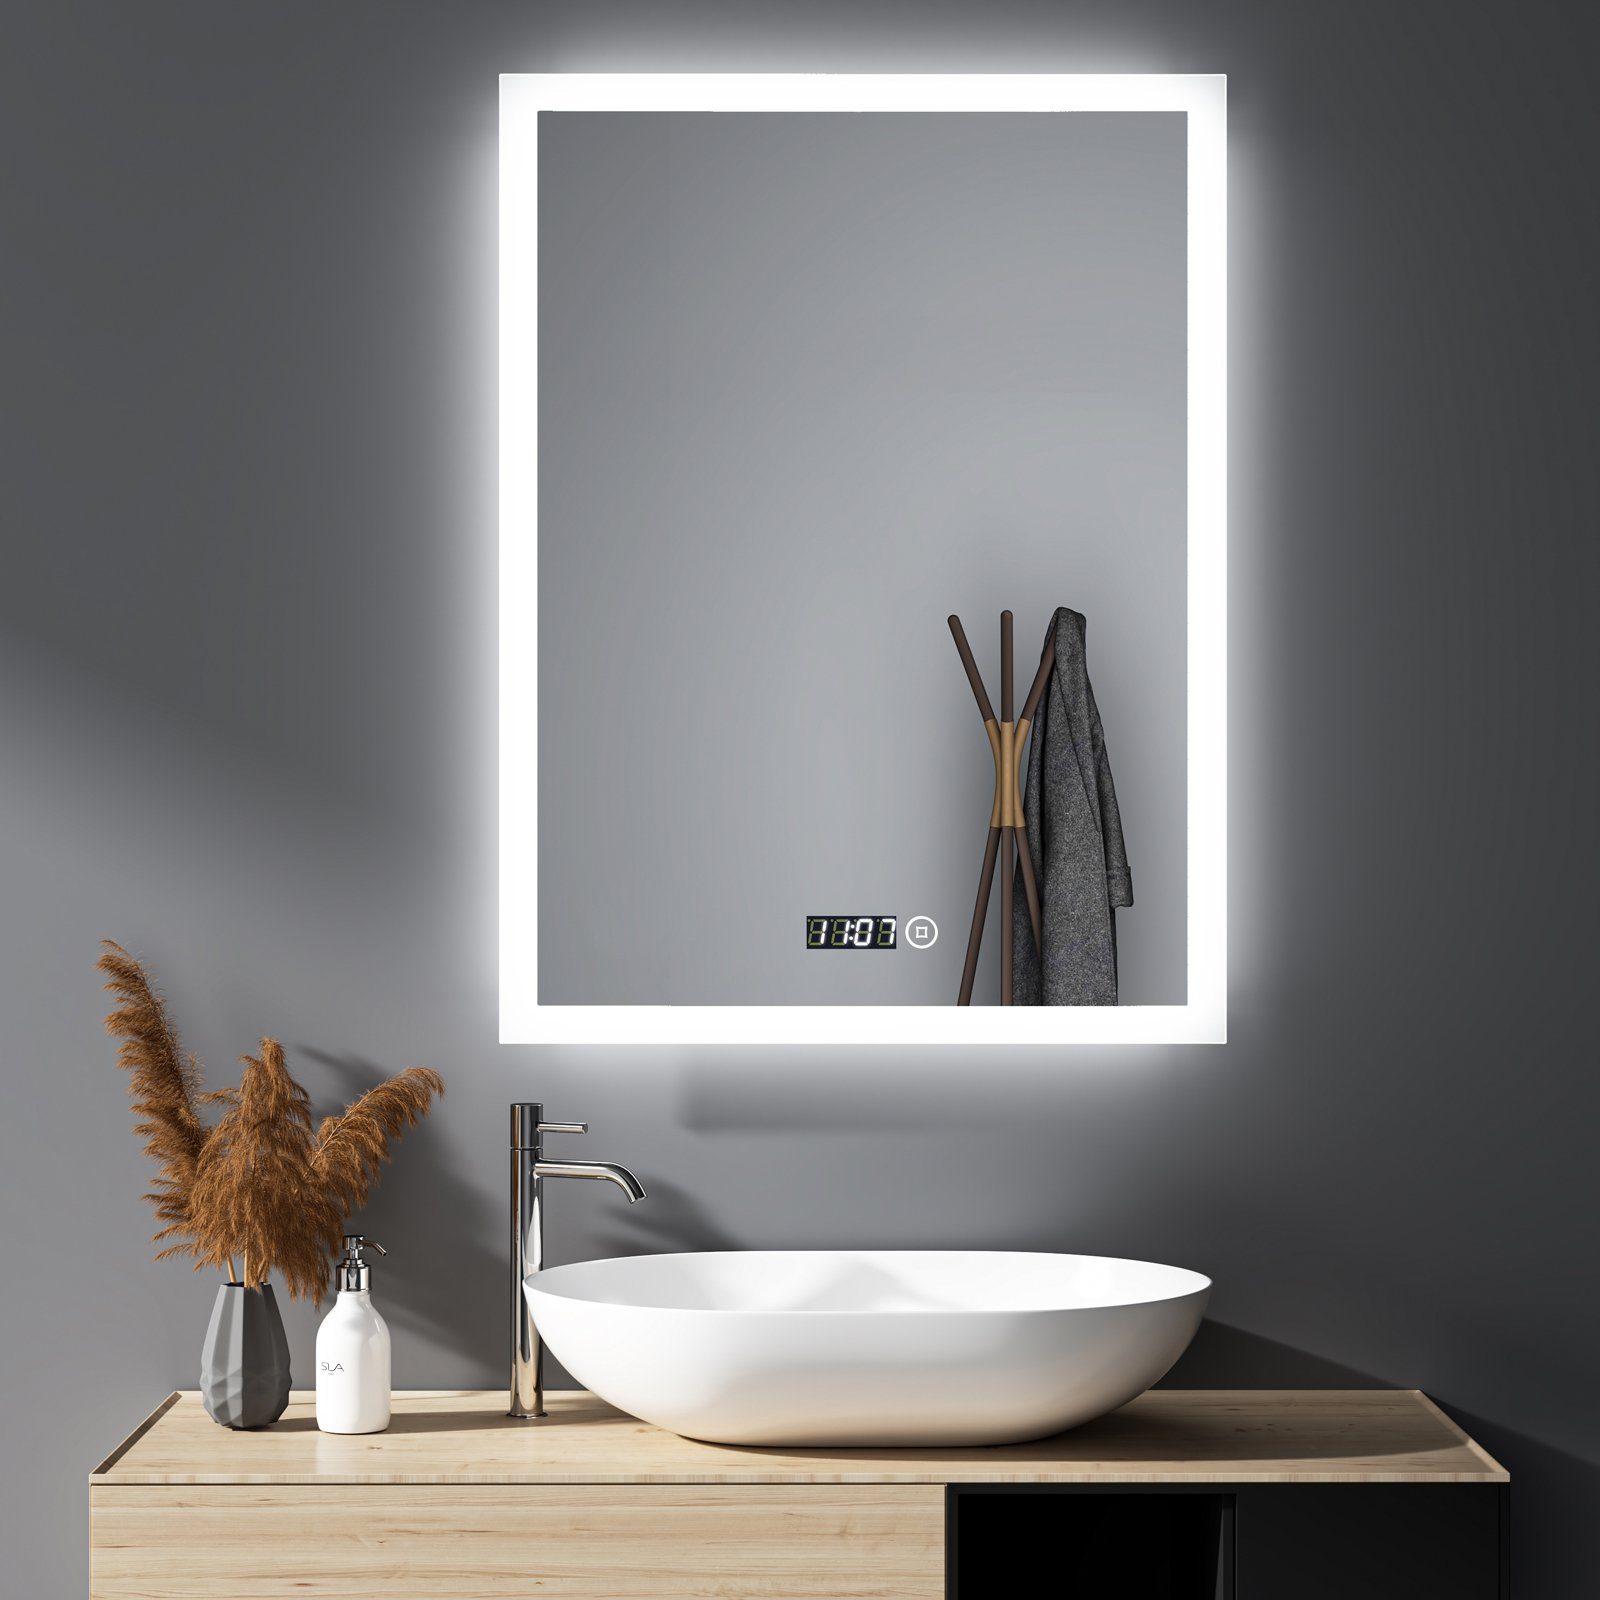 WDWRITTI Spiegel Led Badspiegel 50x70 mit Uhr Touch Dimmbar  Kalt/Neutral/Warmweiß (Speicherfunktion, IP44), Wandschalter auswählbar